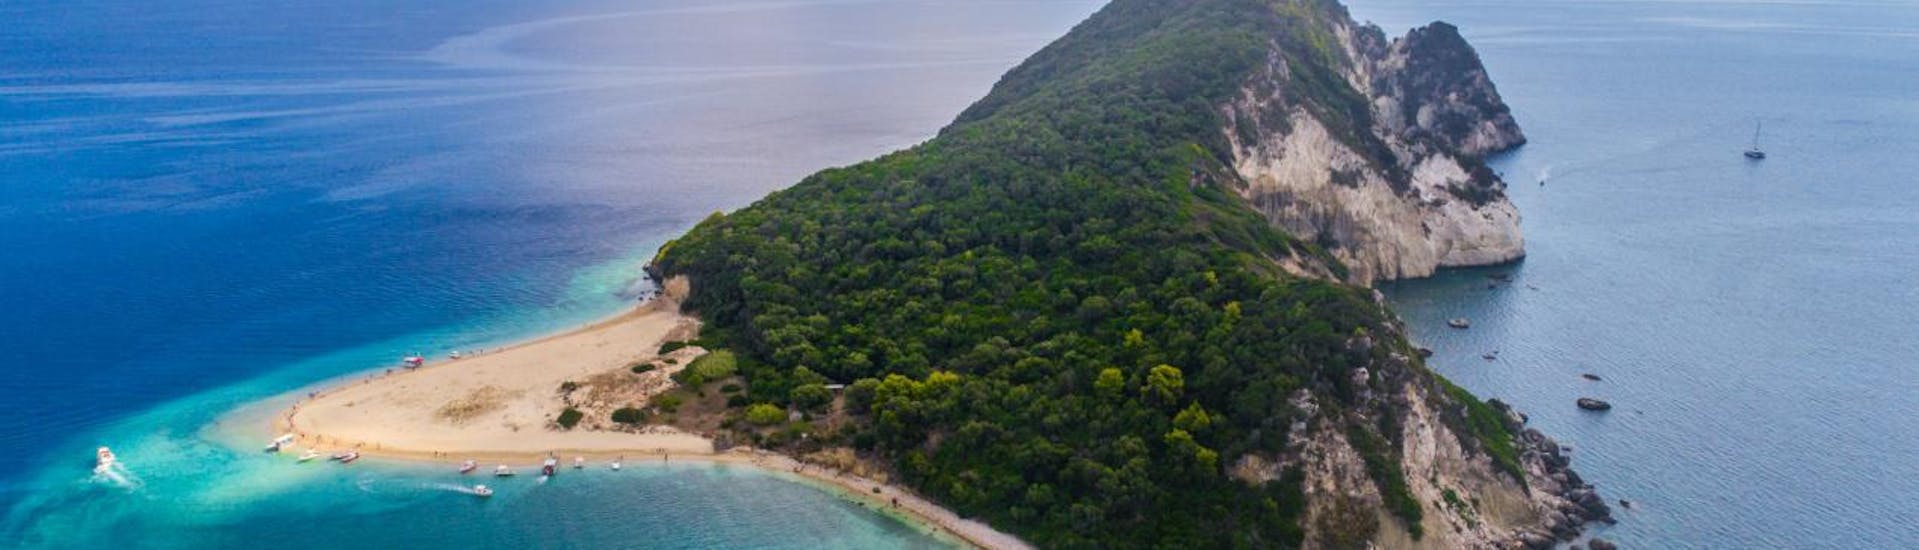 Foto de la isla de las tortugas y el mar azul, que se puede visitar en el alquiler de barcos en Agios Sostis - Elite con Traventure Zakynthos.